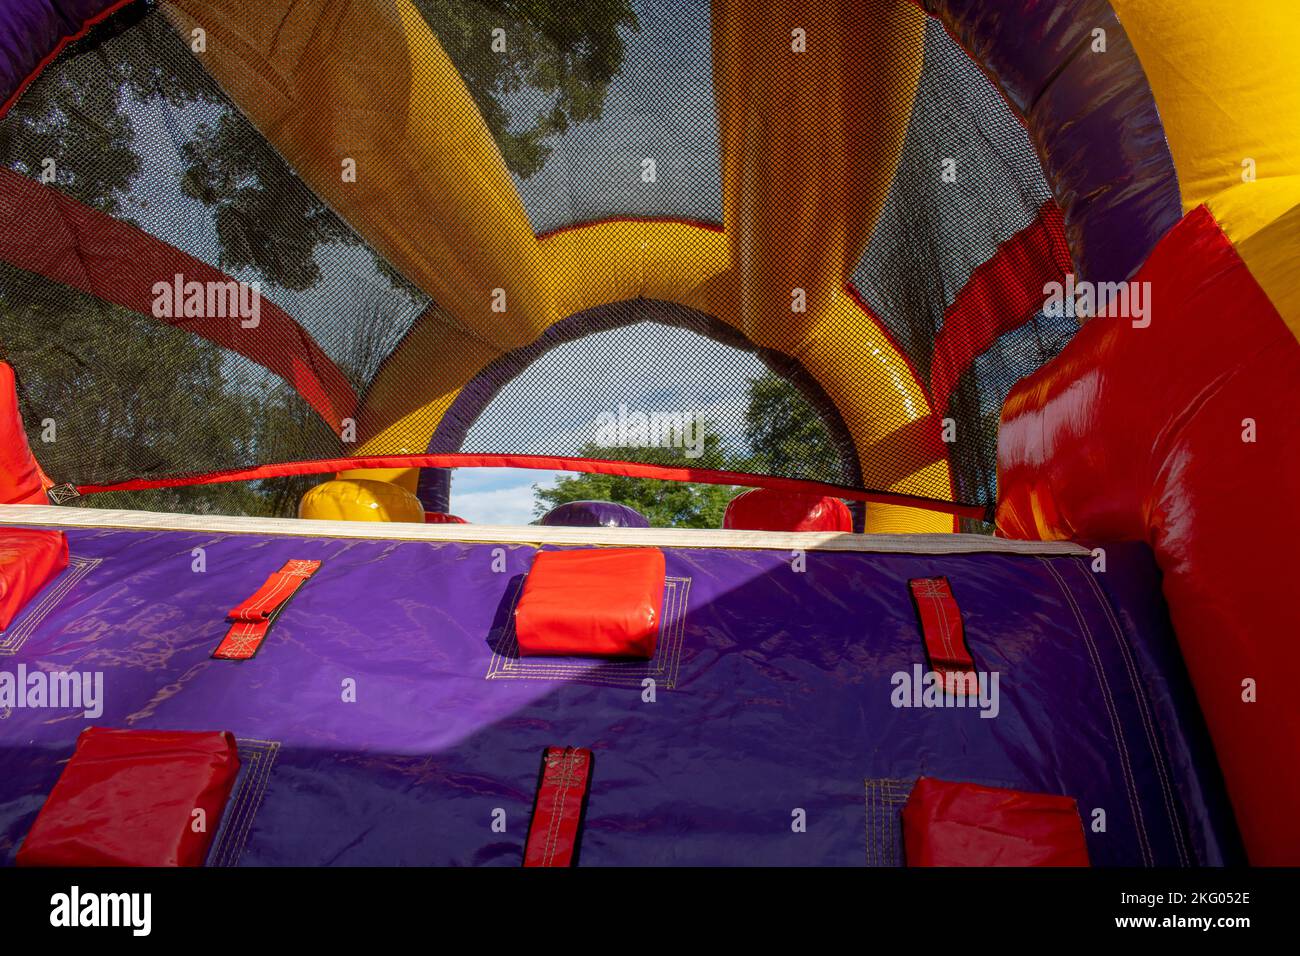 amarillo rojo púrpura diversión casa inflable de la diversión para que los niños jueguen Foto de stock